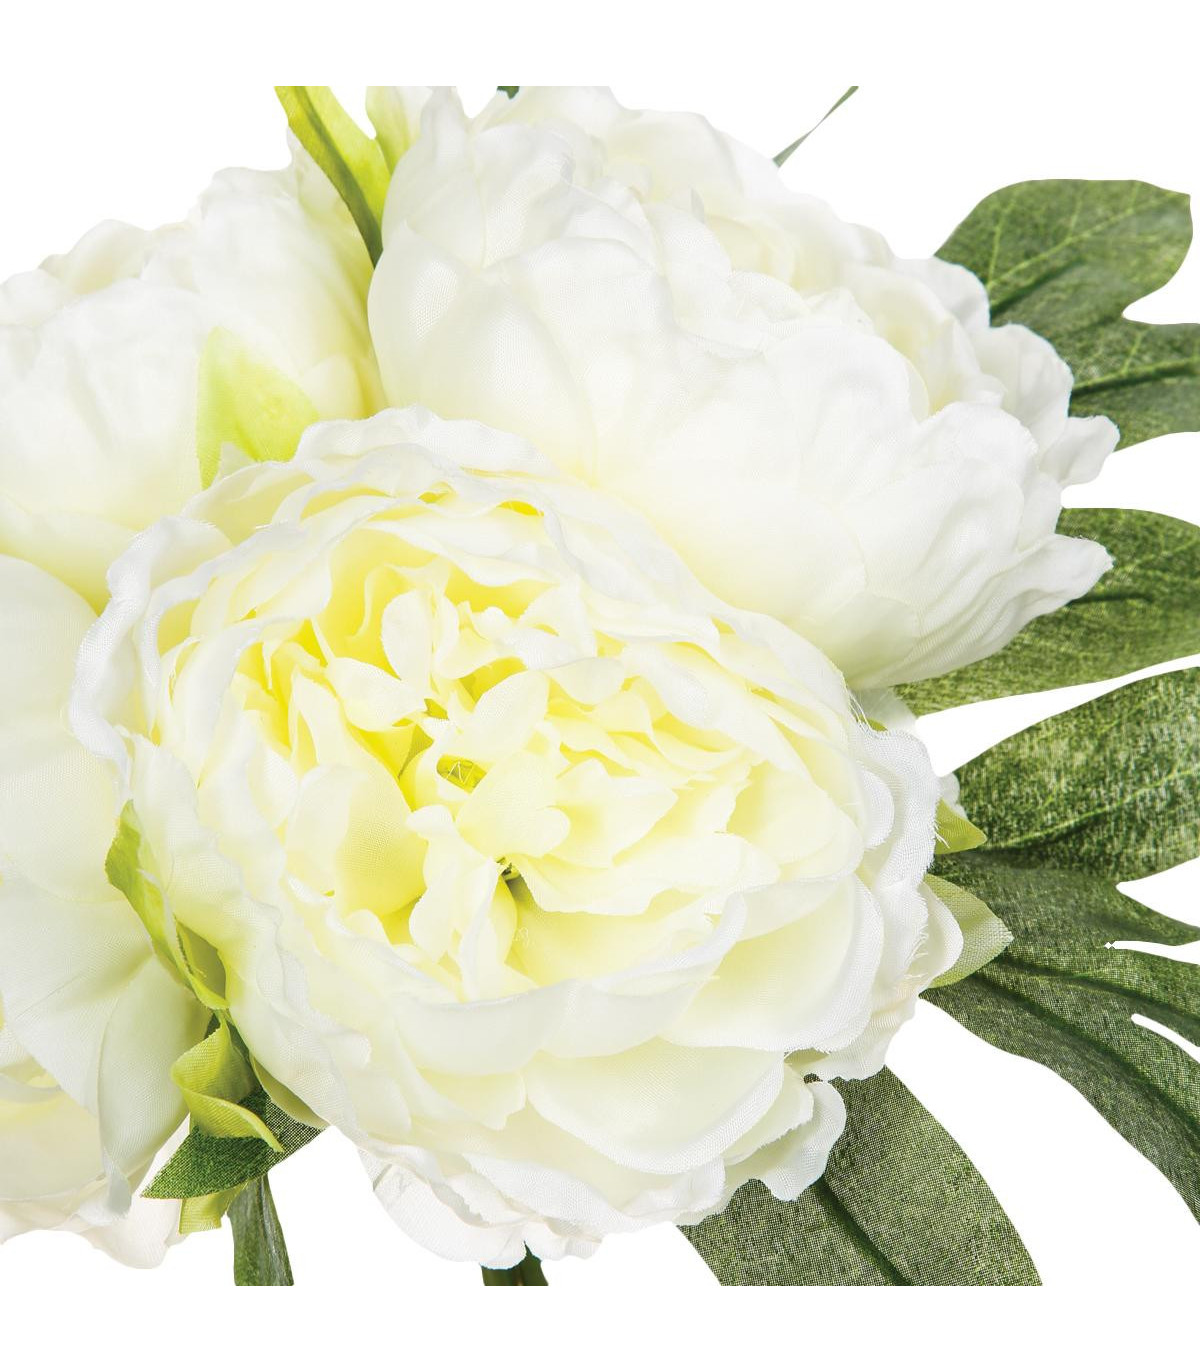 bouquet-de-4-pivoines-blanches-h30 (1)